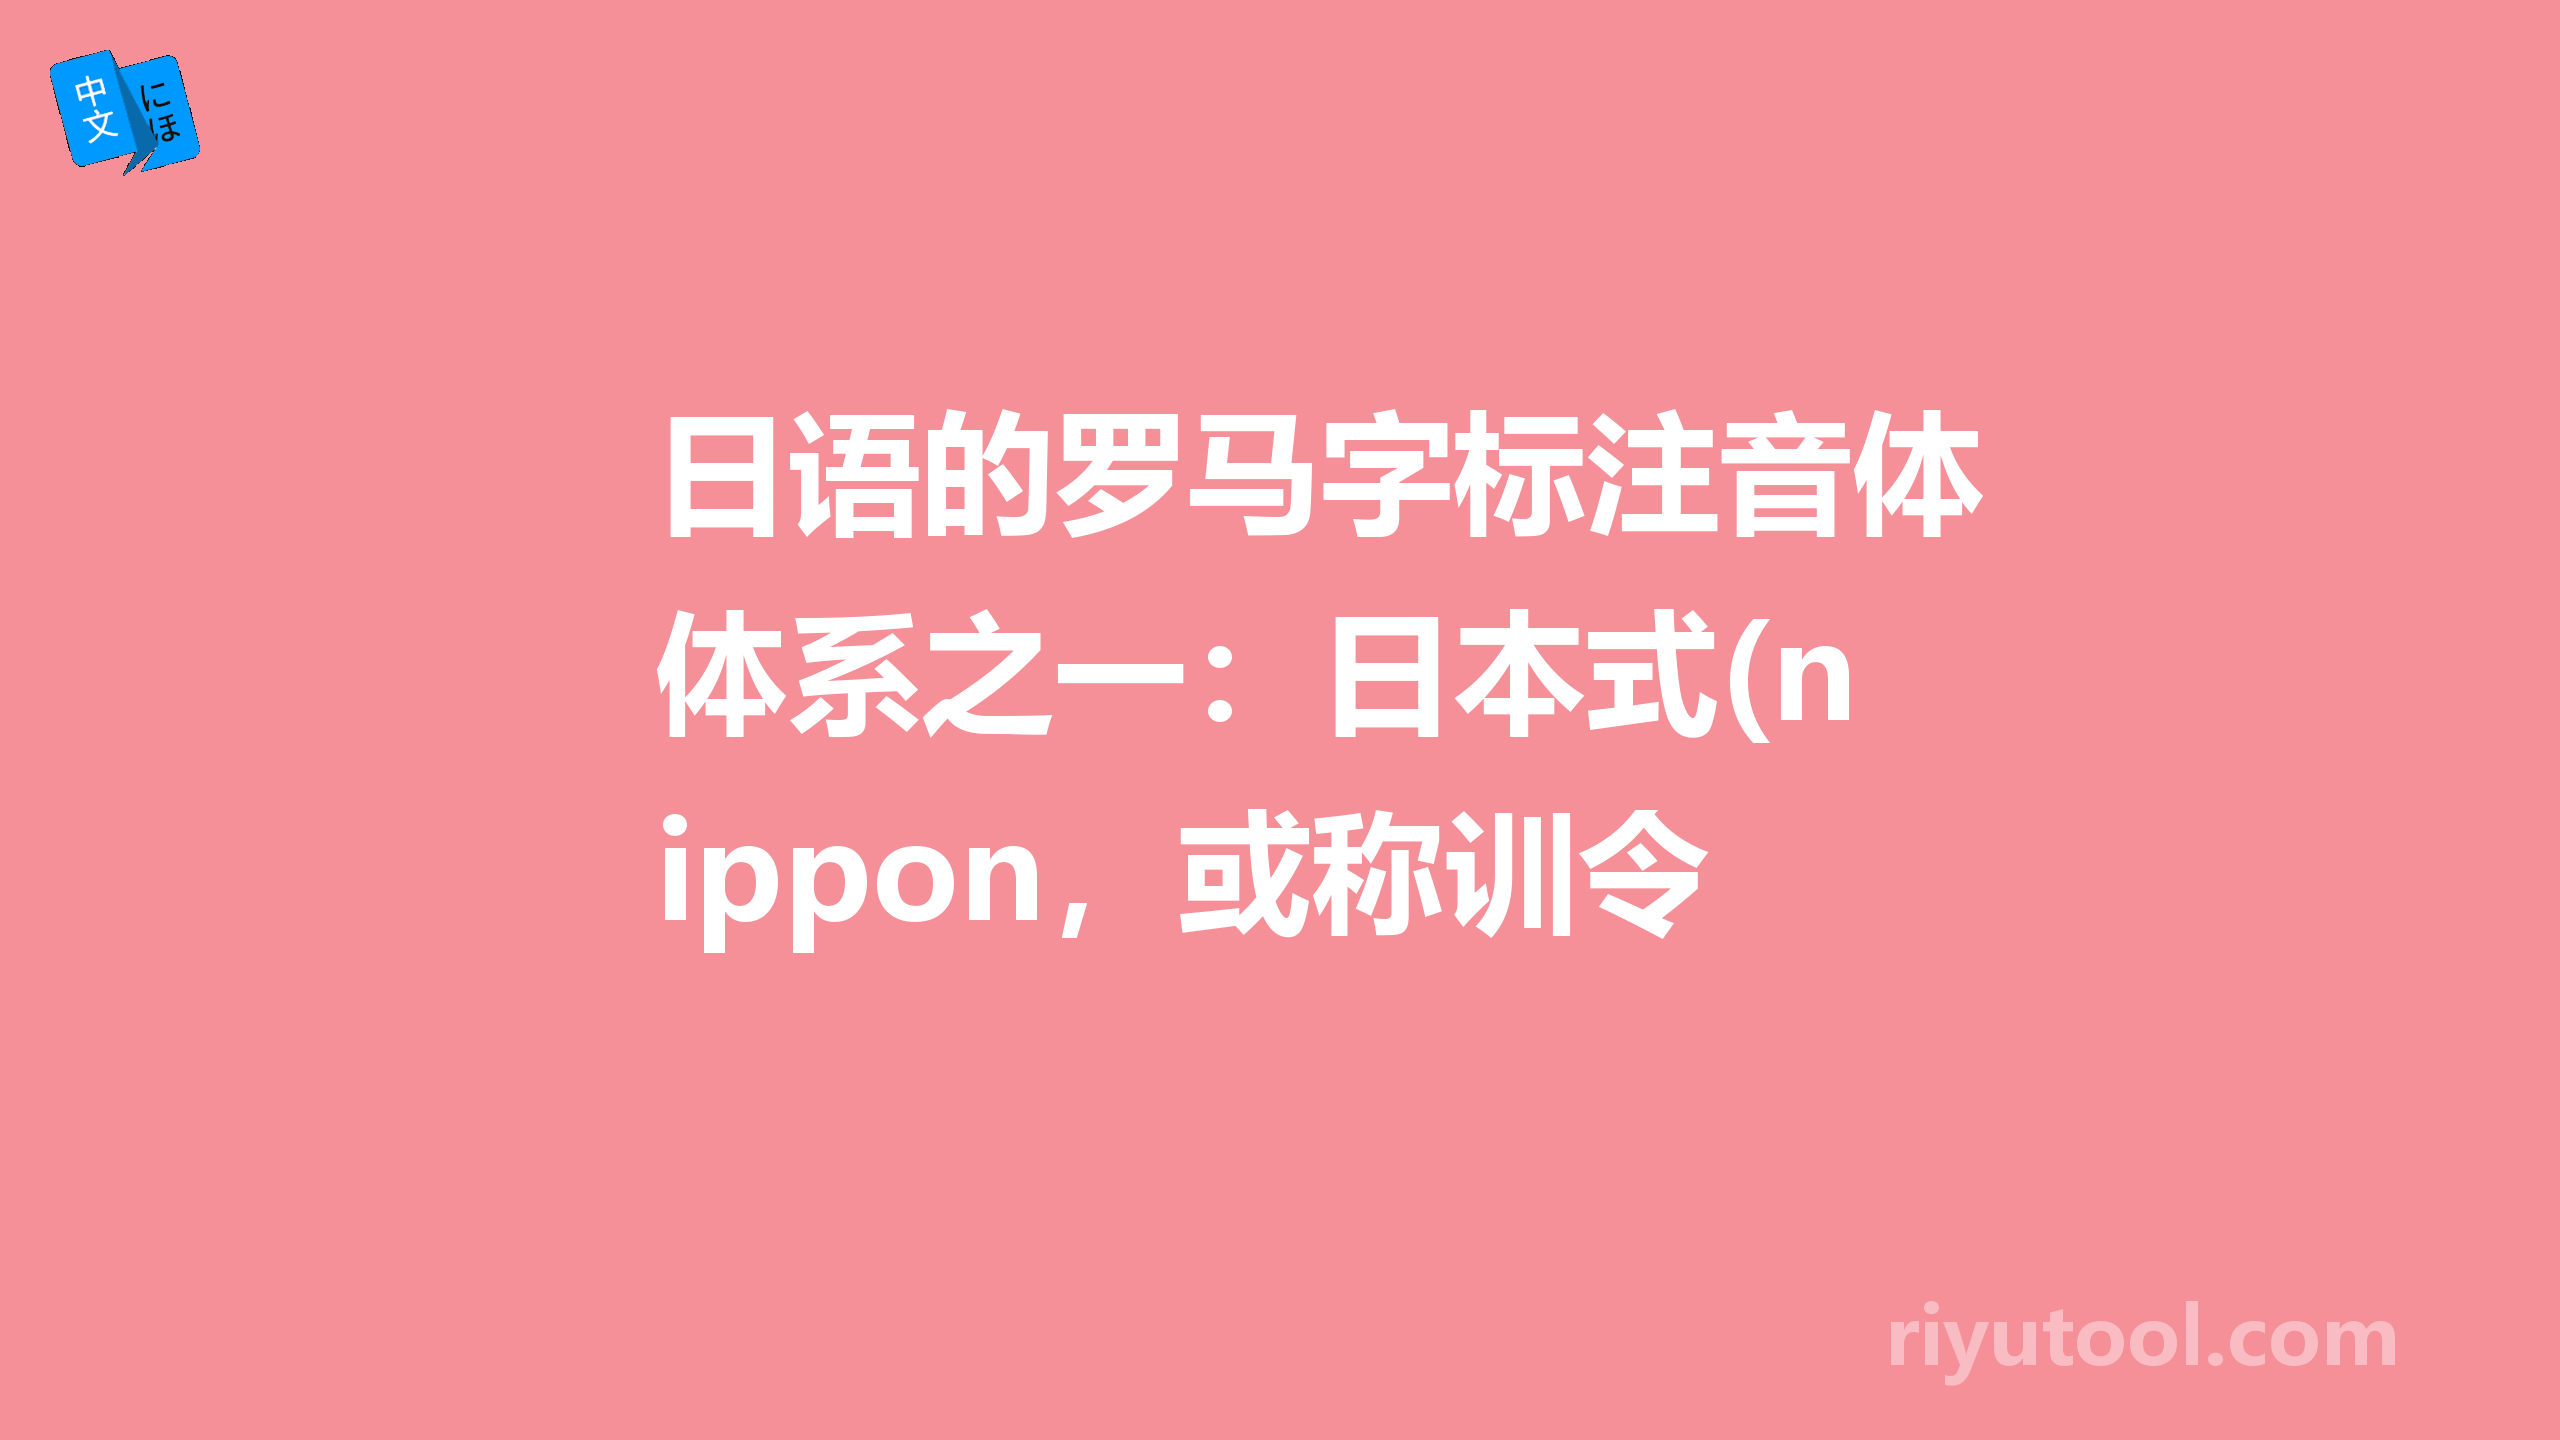 日语的罗马字标注音体系之一：日本式(nippon，或称训令式)